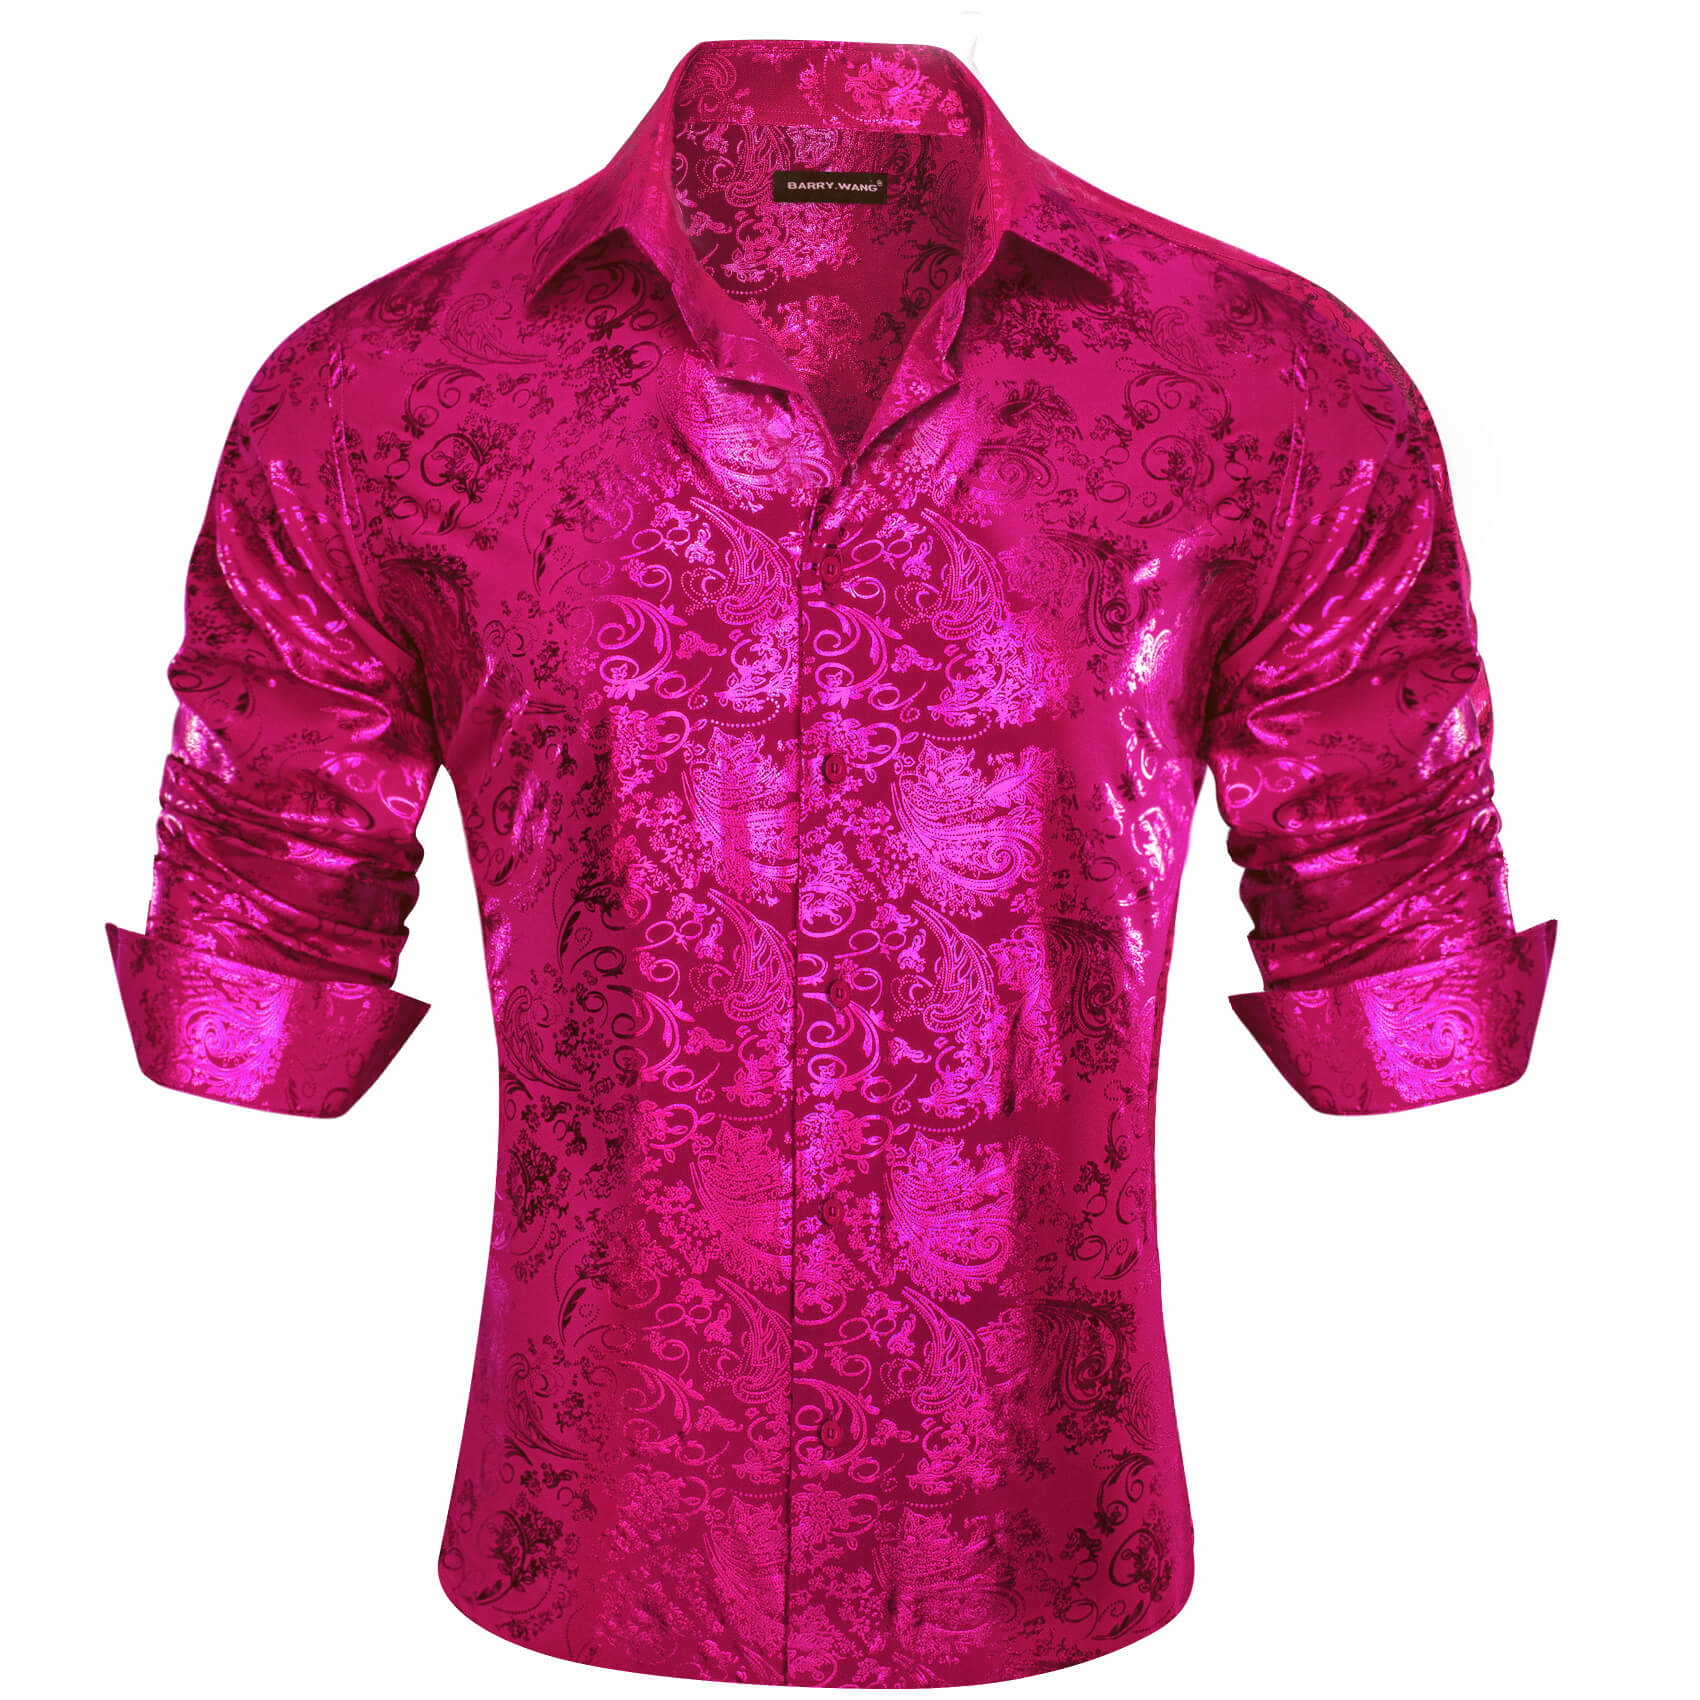 Barry.wang Men's Shirt Magenta Pink Bronzing Floral Button Down Long Sleeve Shirt